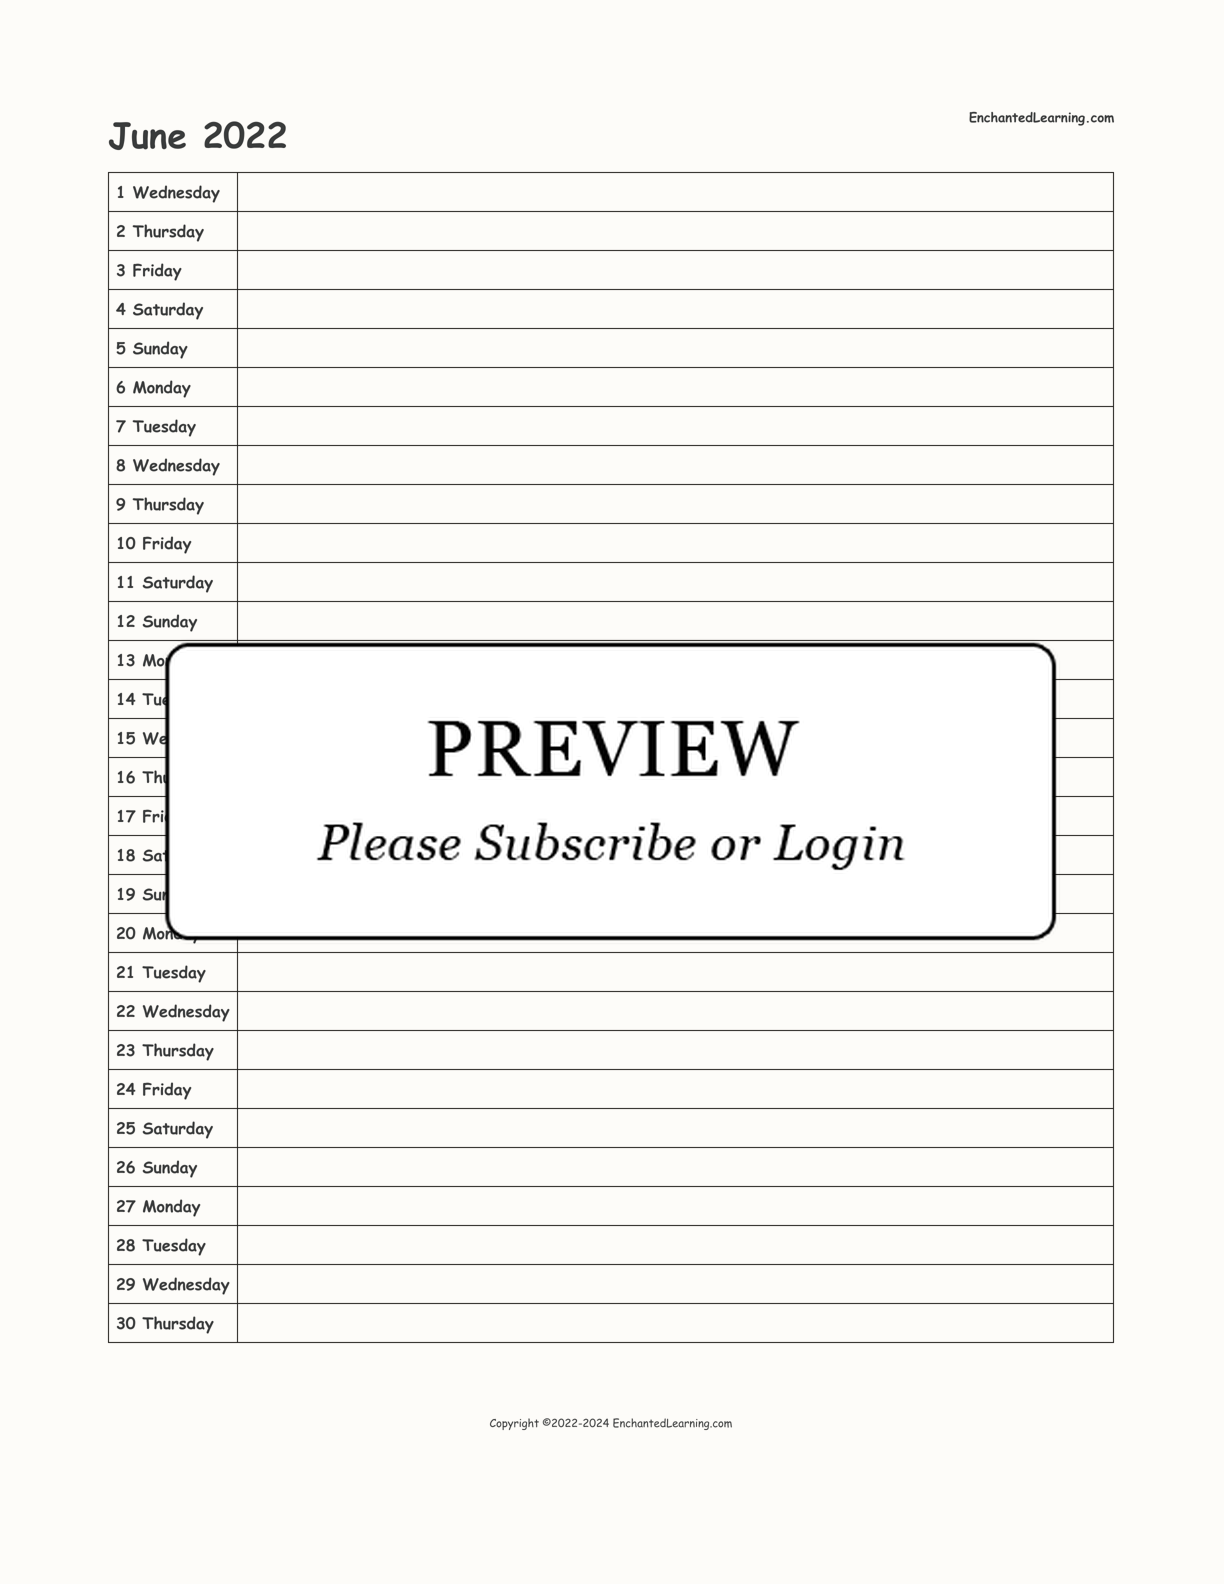 June 2022 Calendar interactive printout page 1